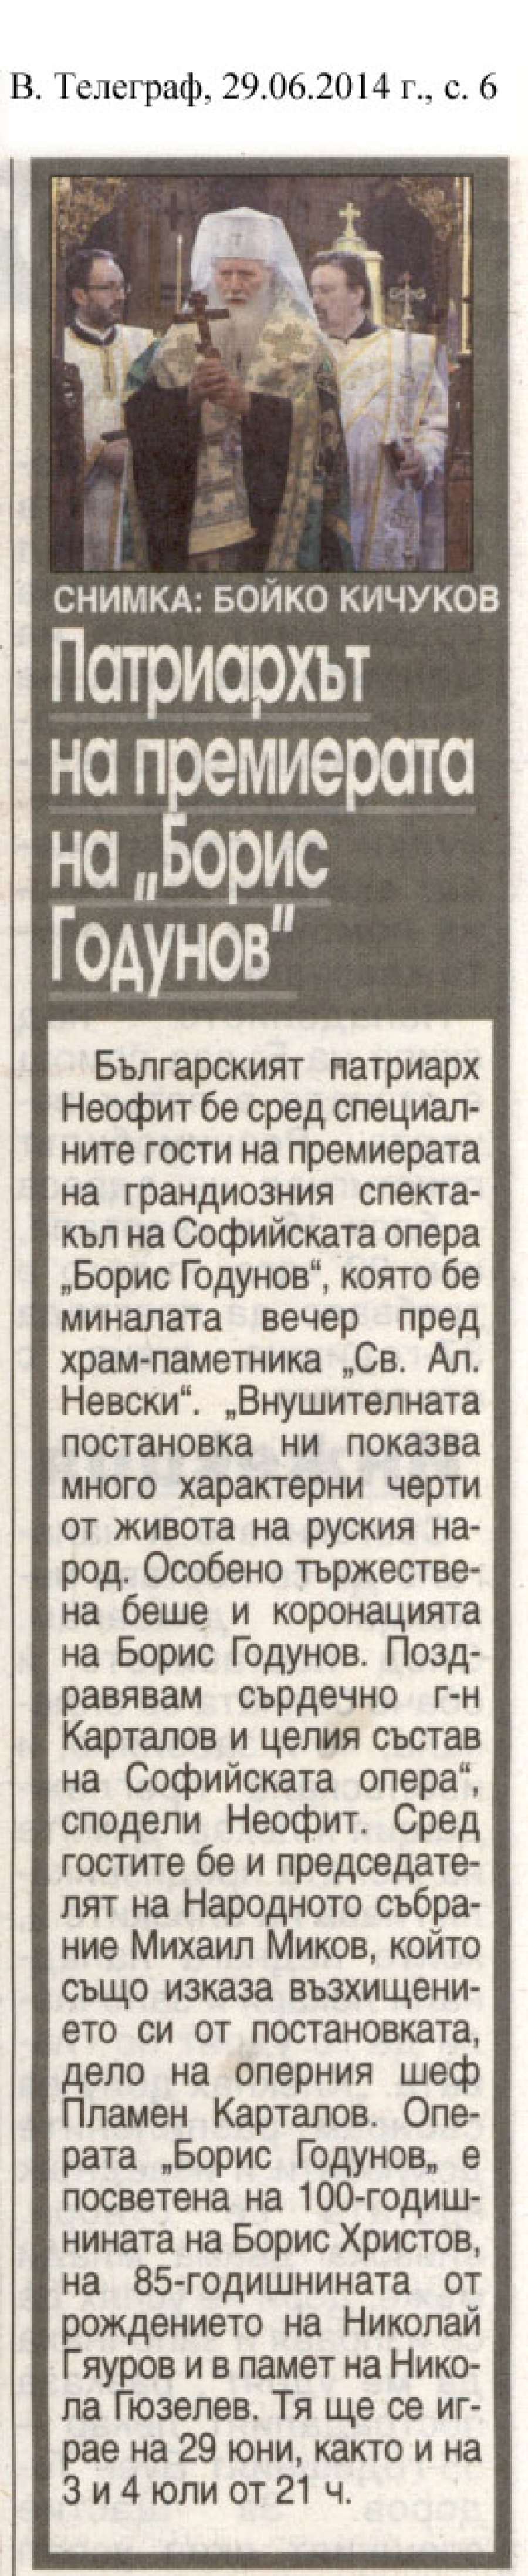 Патриархът на премиерата на "Борис Годунов" - в-к Телеграф - 29.06.2014